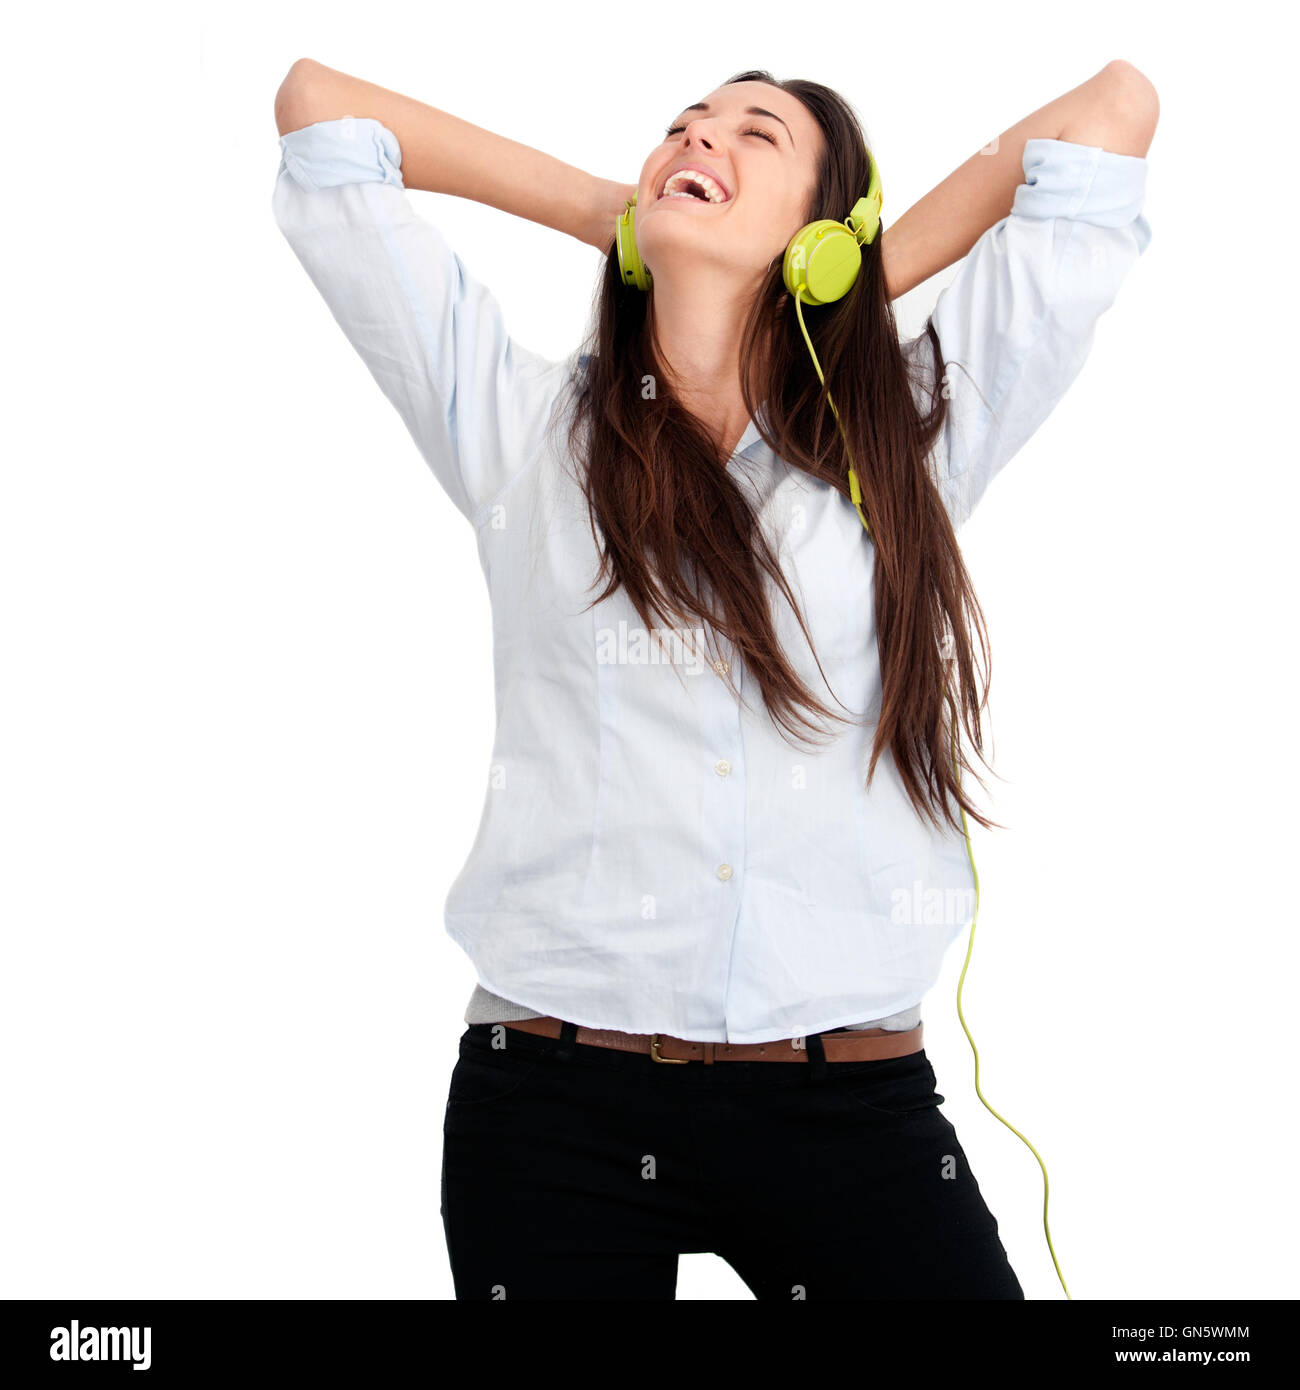 Girl feeling happy with music Stock Photo - Alamy